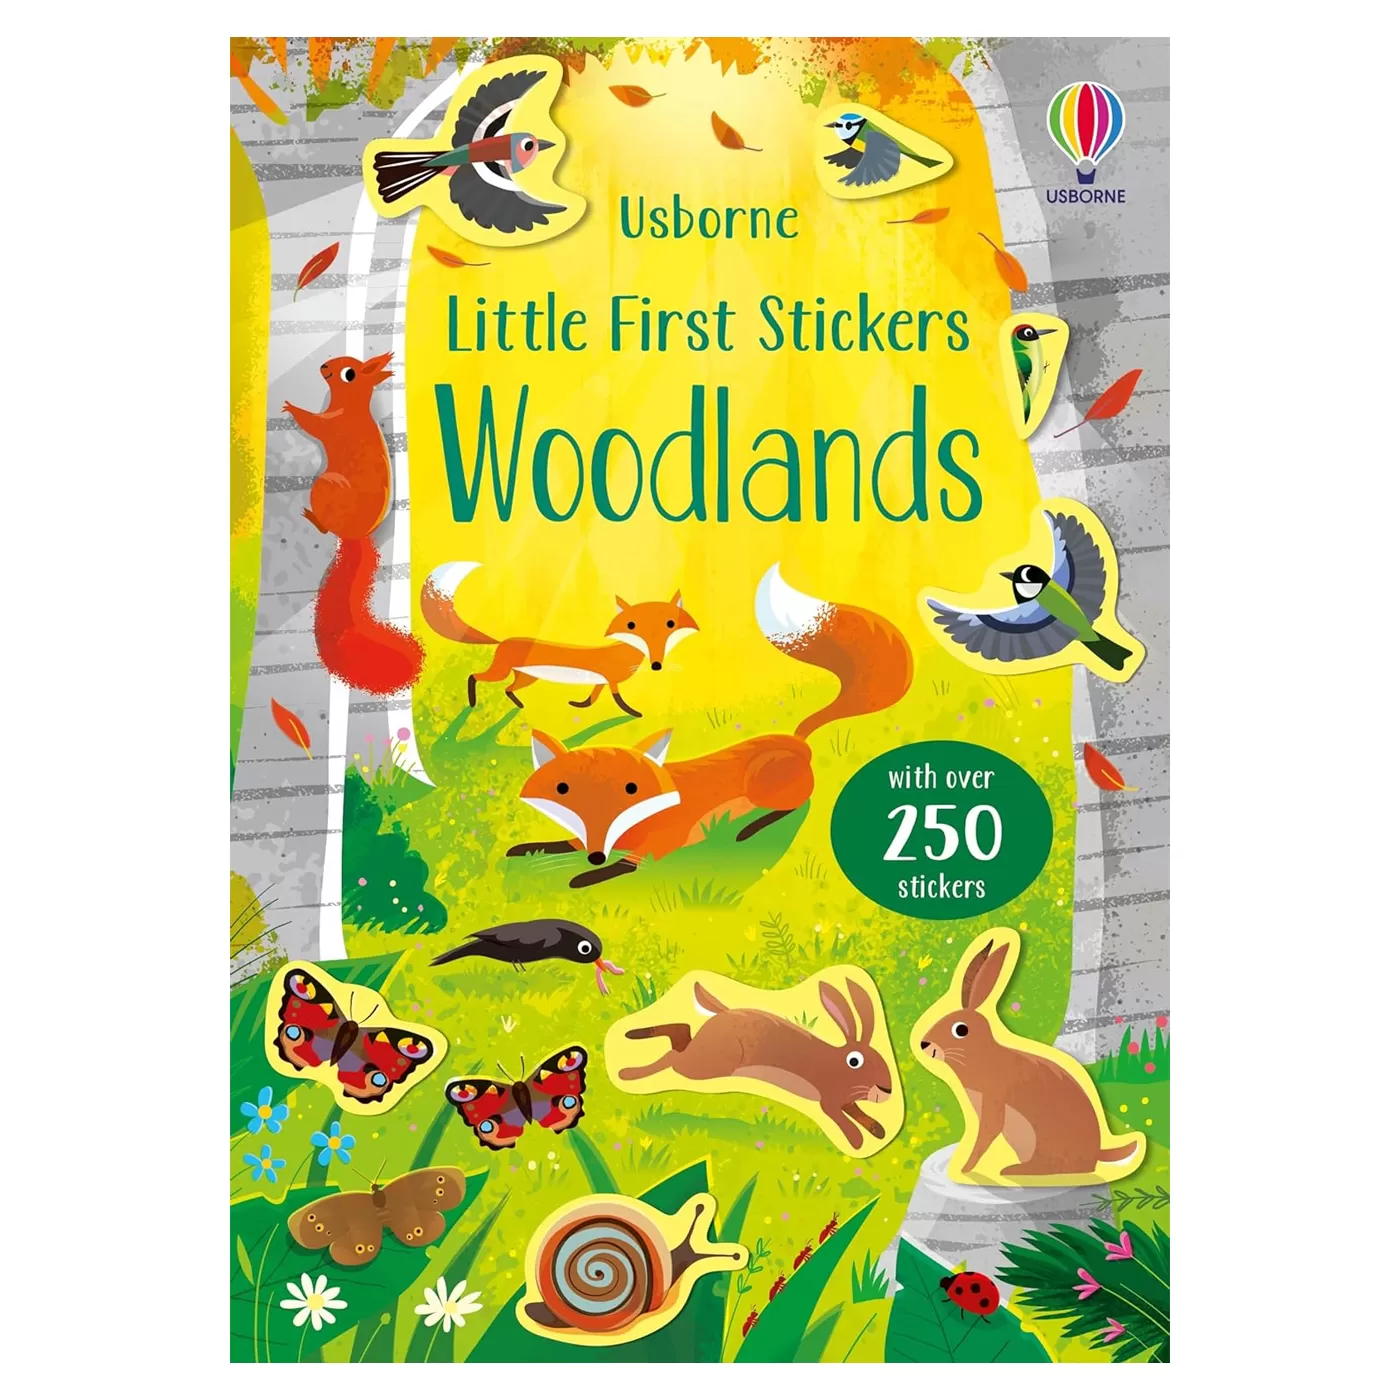 USBORNE Little First Stickers Woodlands